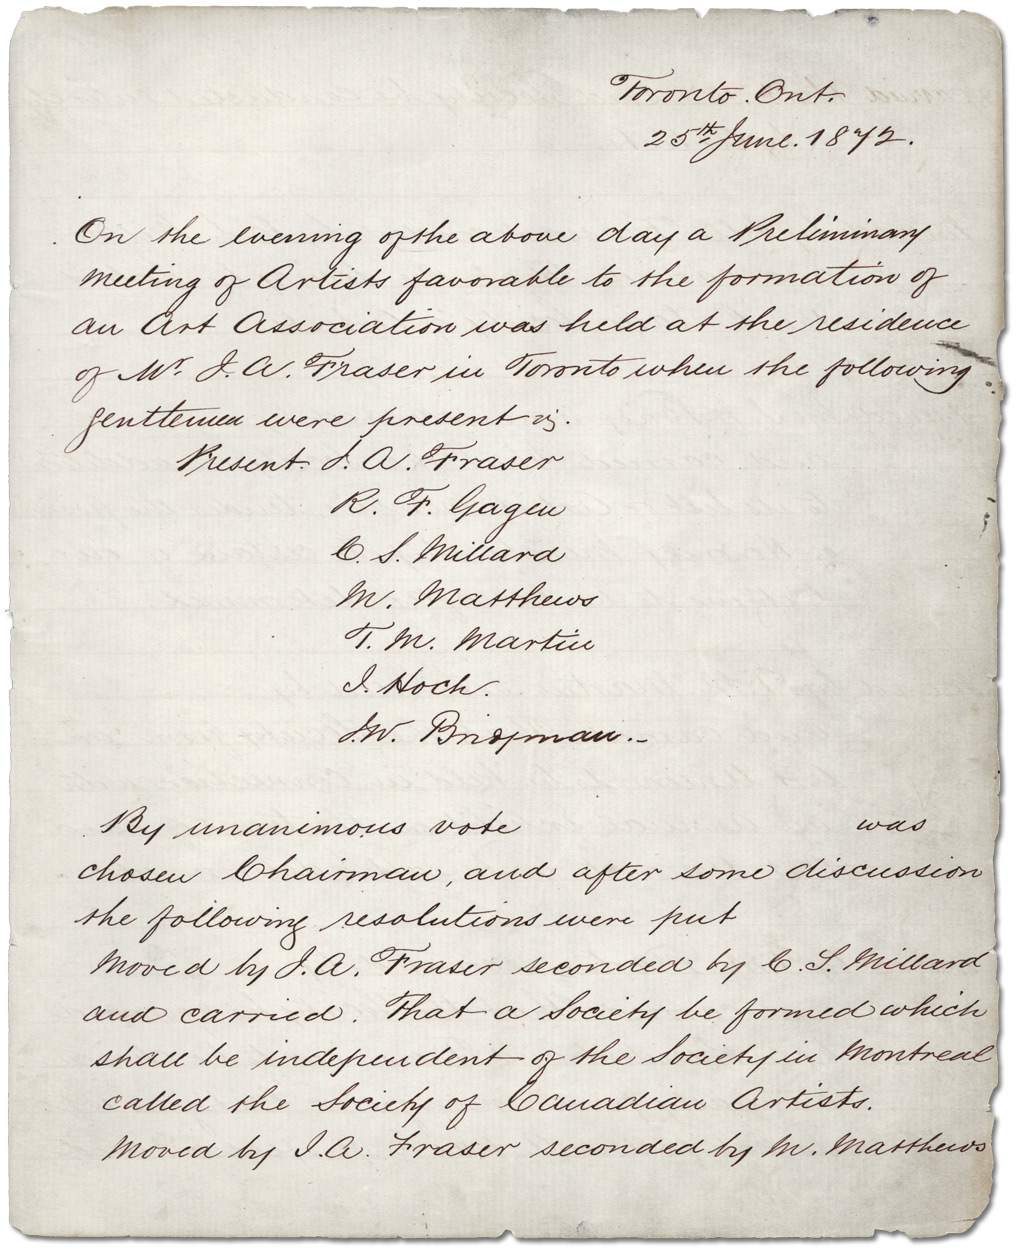 Première page du registre des procès-verbaux de l’OSA contenant le compte rendu de la réunion inaugurale du 25 juin 1872